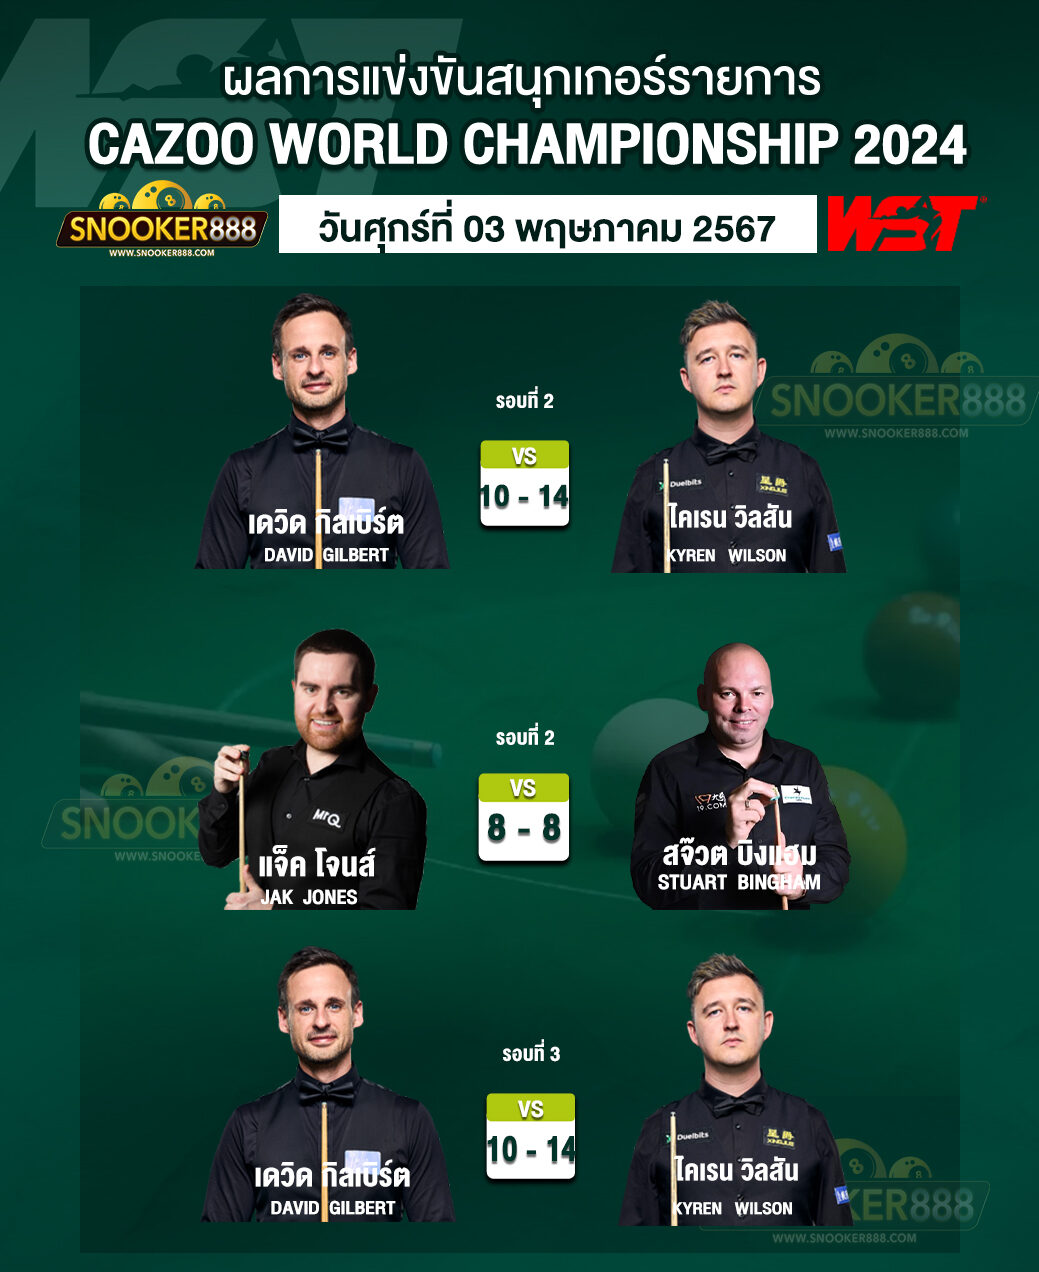 ผลการแข่งขันสนุกเกอร์ CAZOO WORLD CHAMPIONSHIP 2024 วันที่ 03 พ.ค. 67